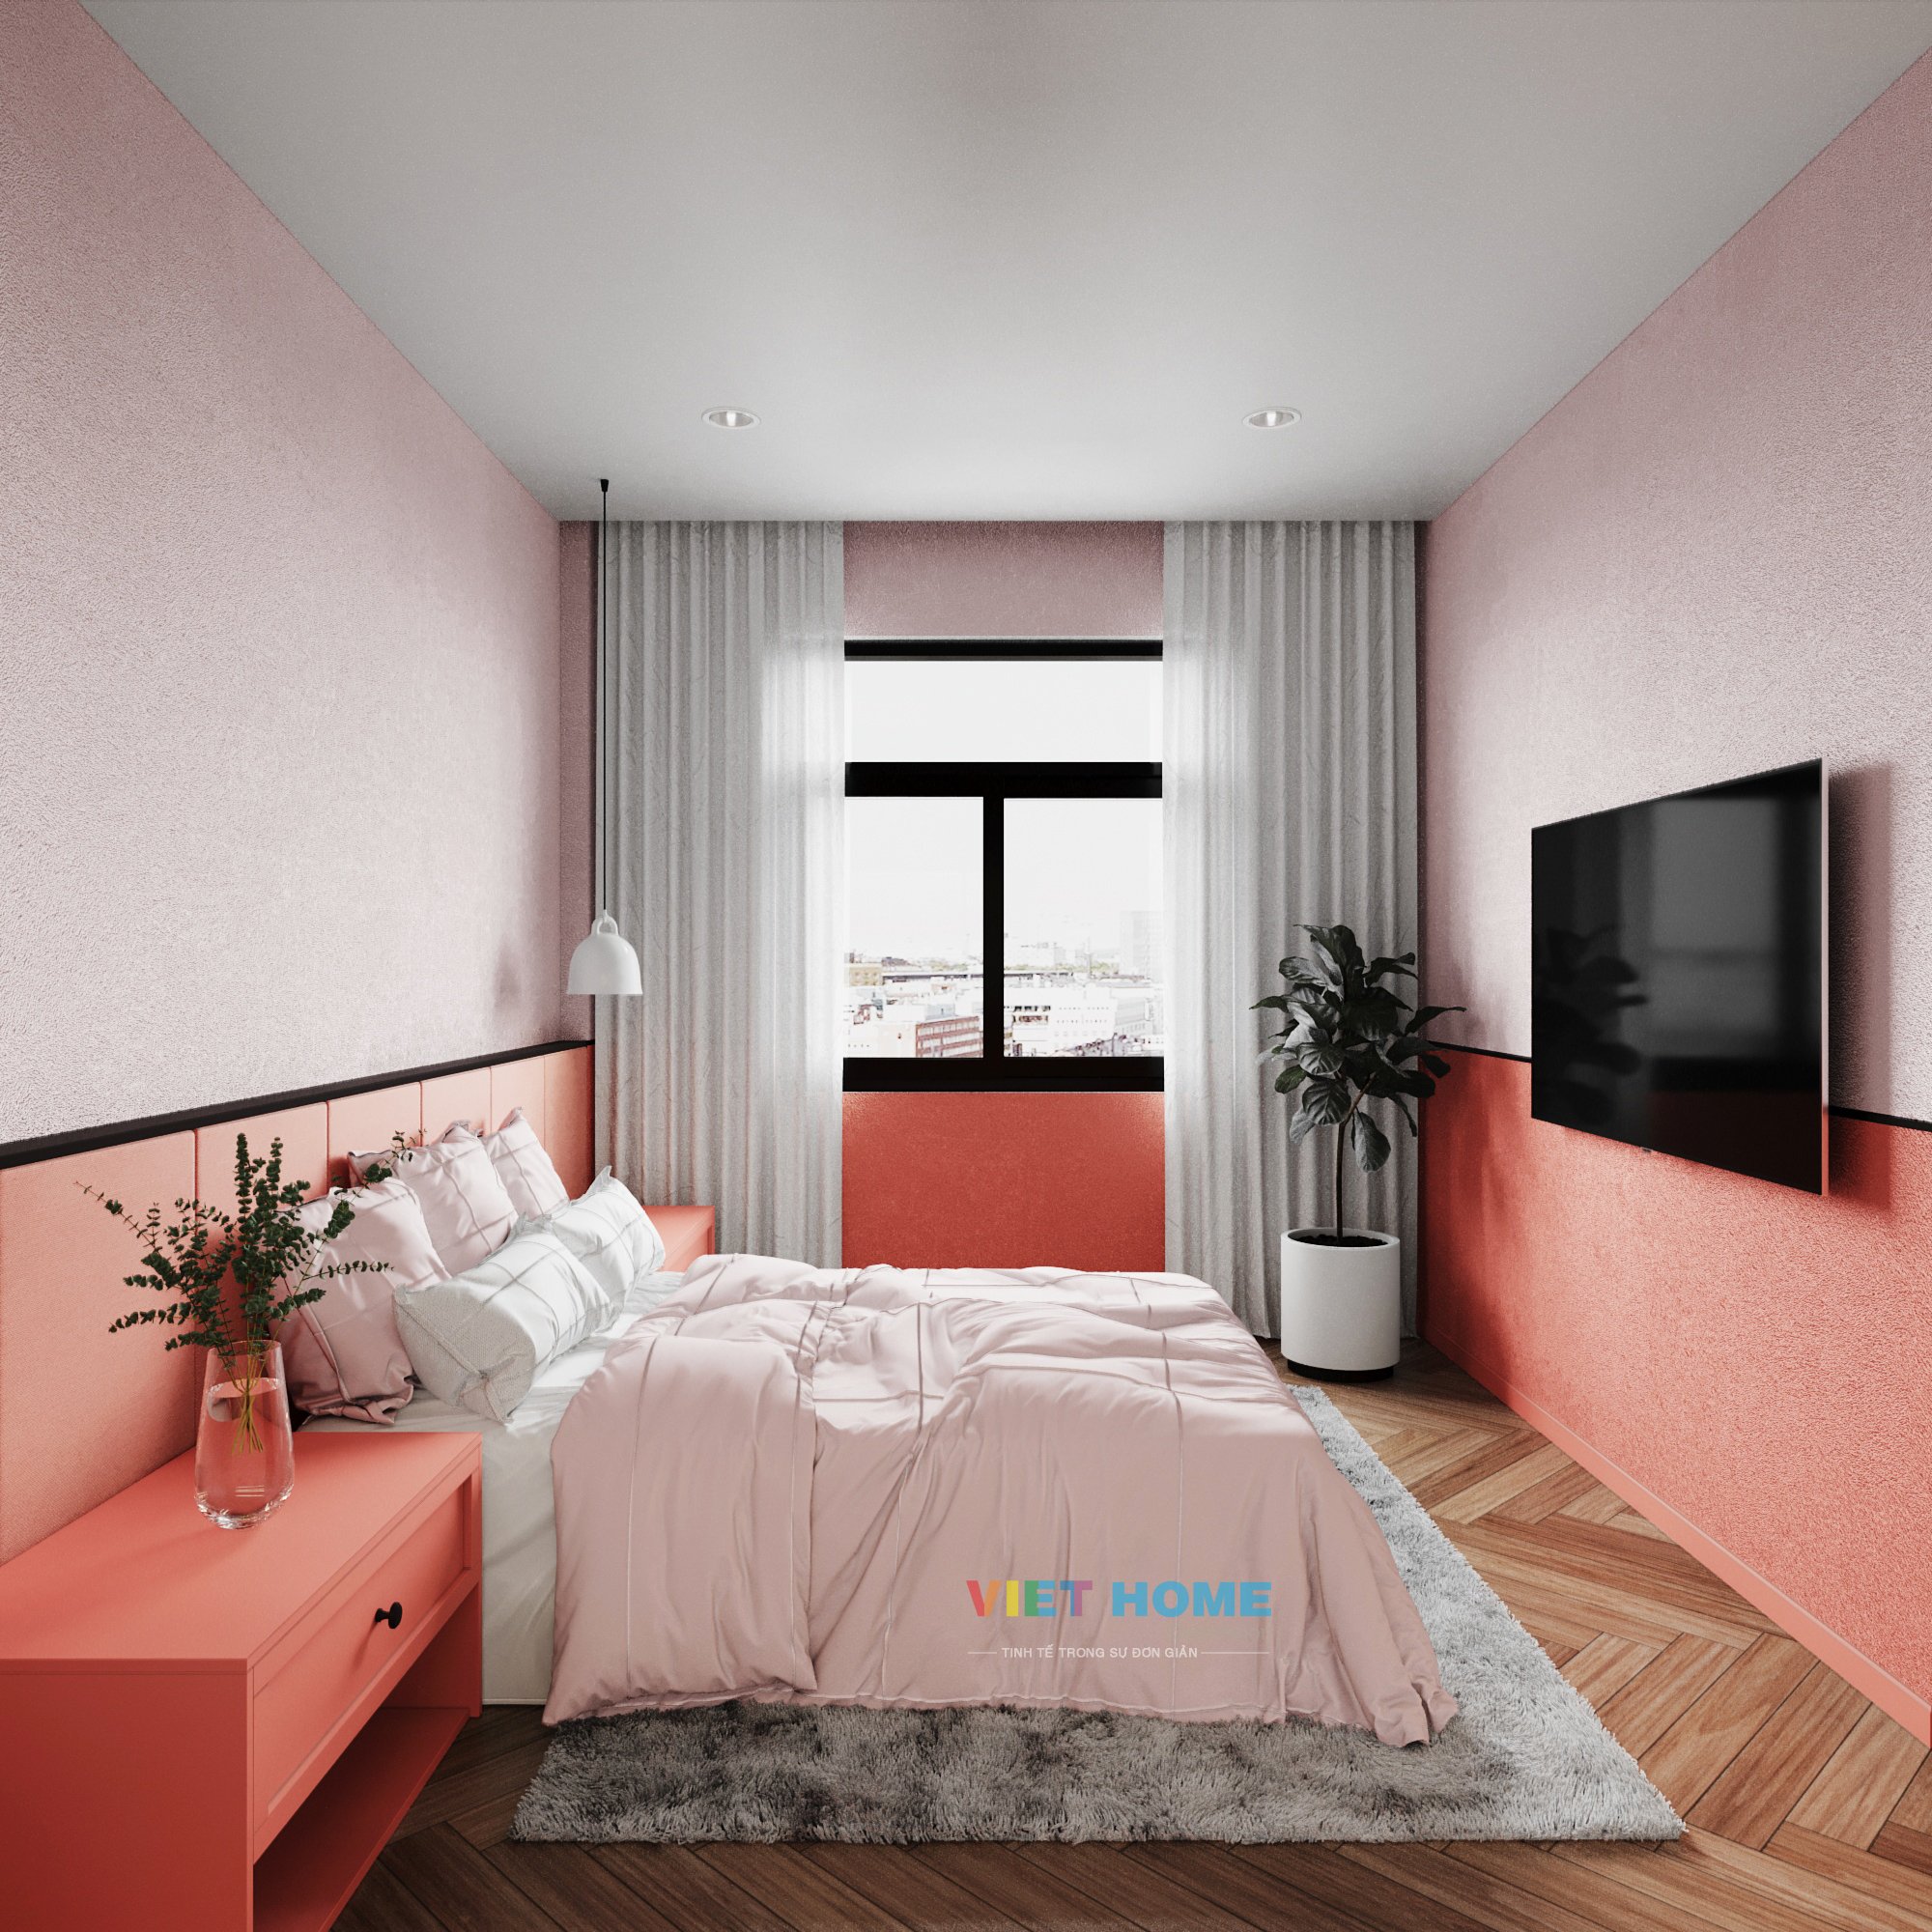 Chi tiết thiết kế nội thất phòng ngủ 3 dự án La vida Residences